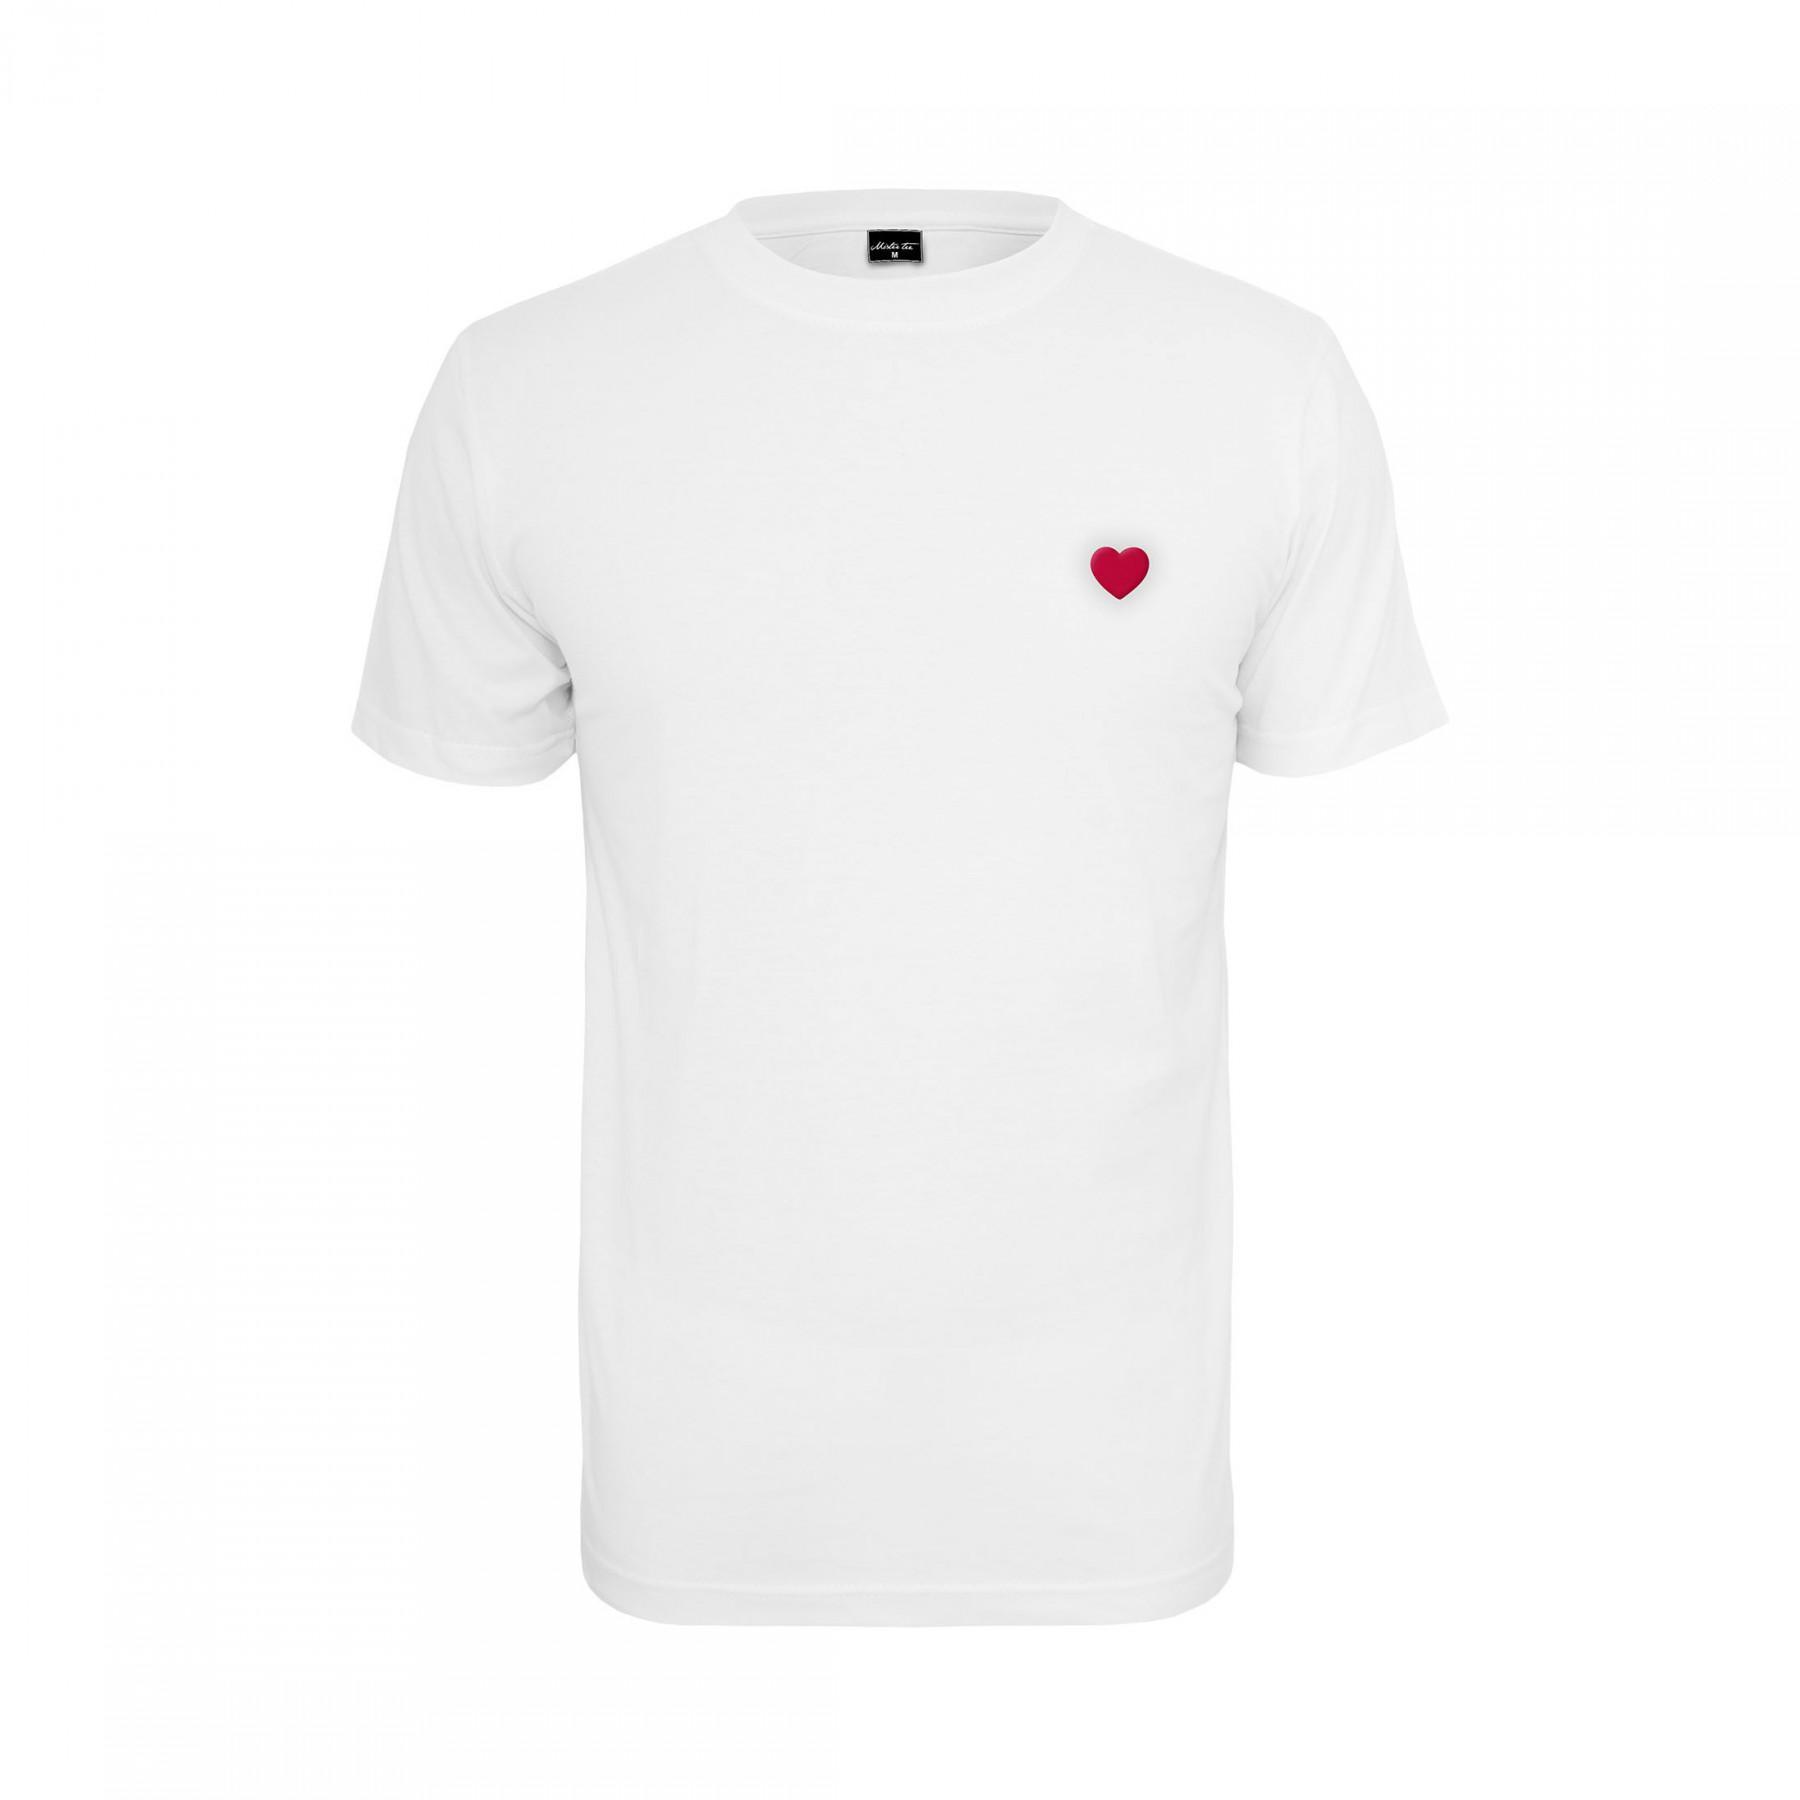 T-shirt femme Mister Tee heart XXL